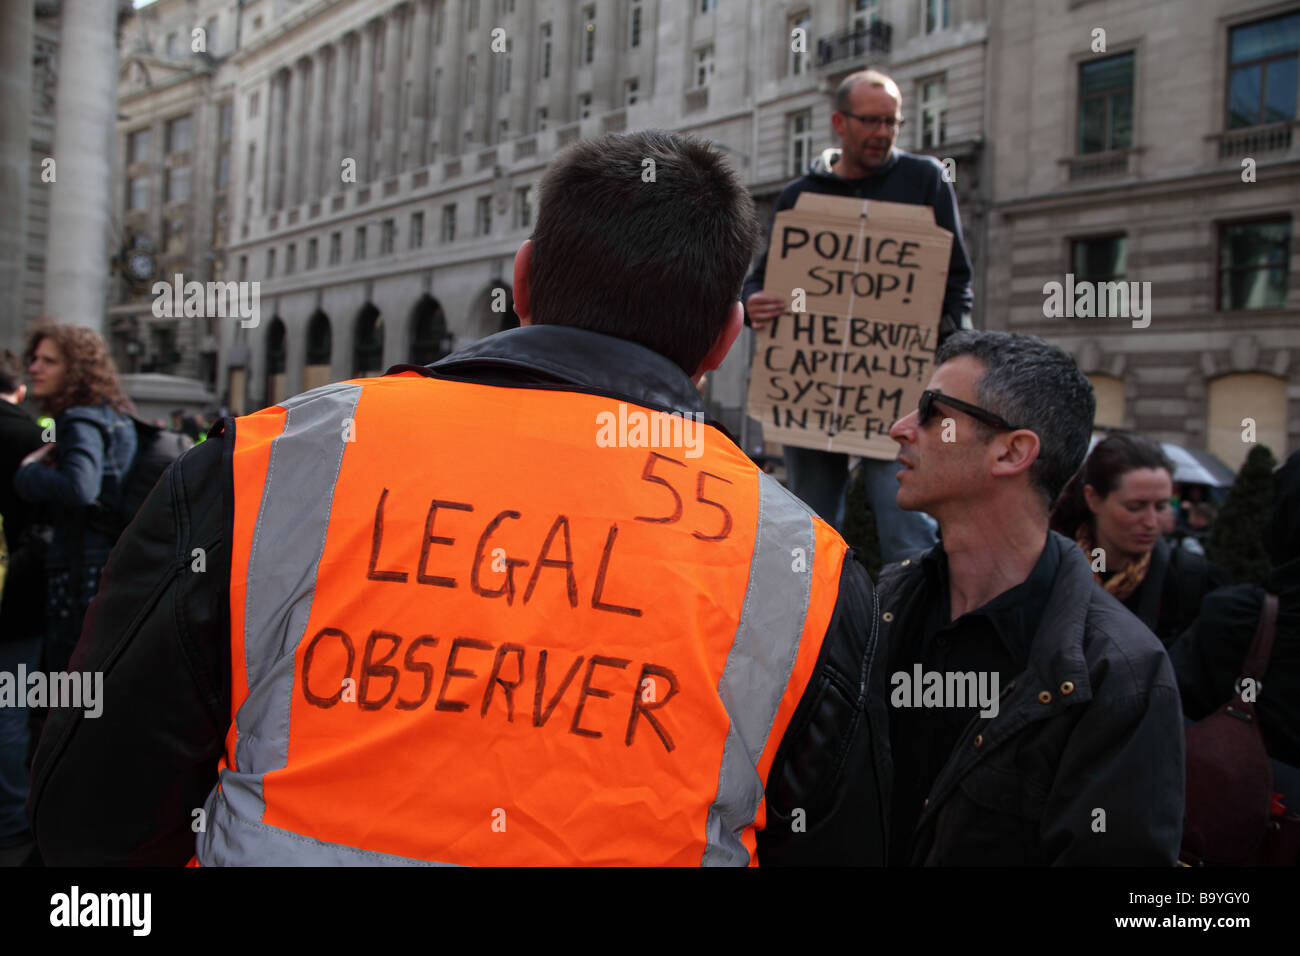 Manifestant surveillé par un observateur juridique à l'extérieur de la Banque d'Angleterre au cours de la 2009 Sommet du G20, Londres, Royaume-Uni. Banque D'Images